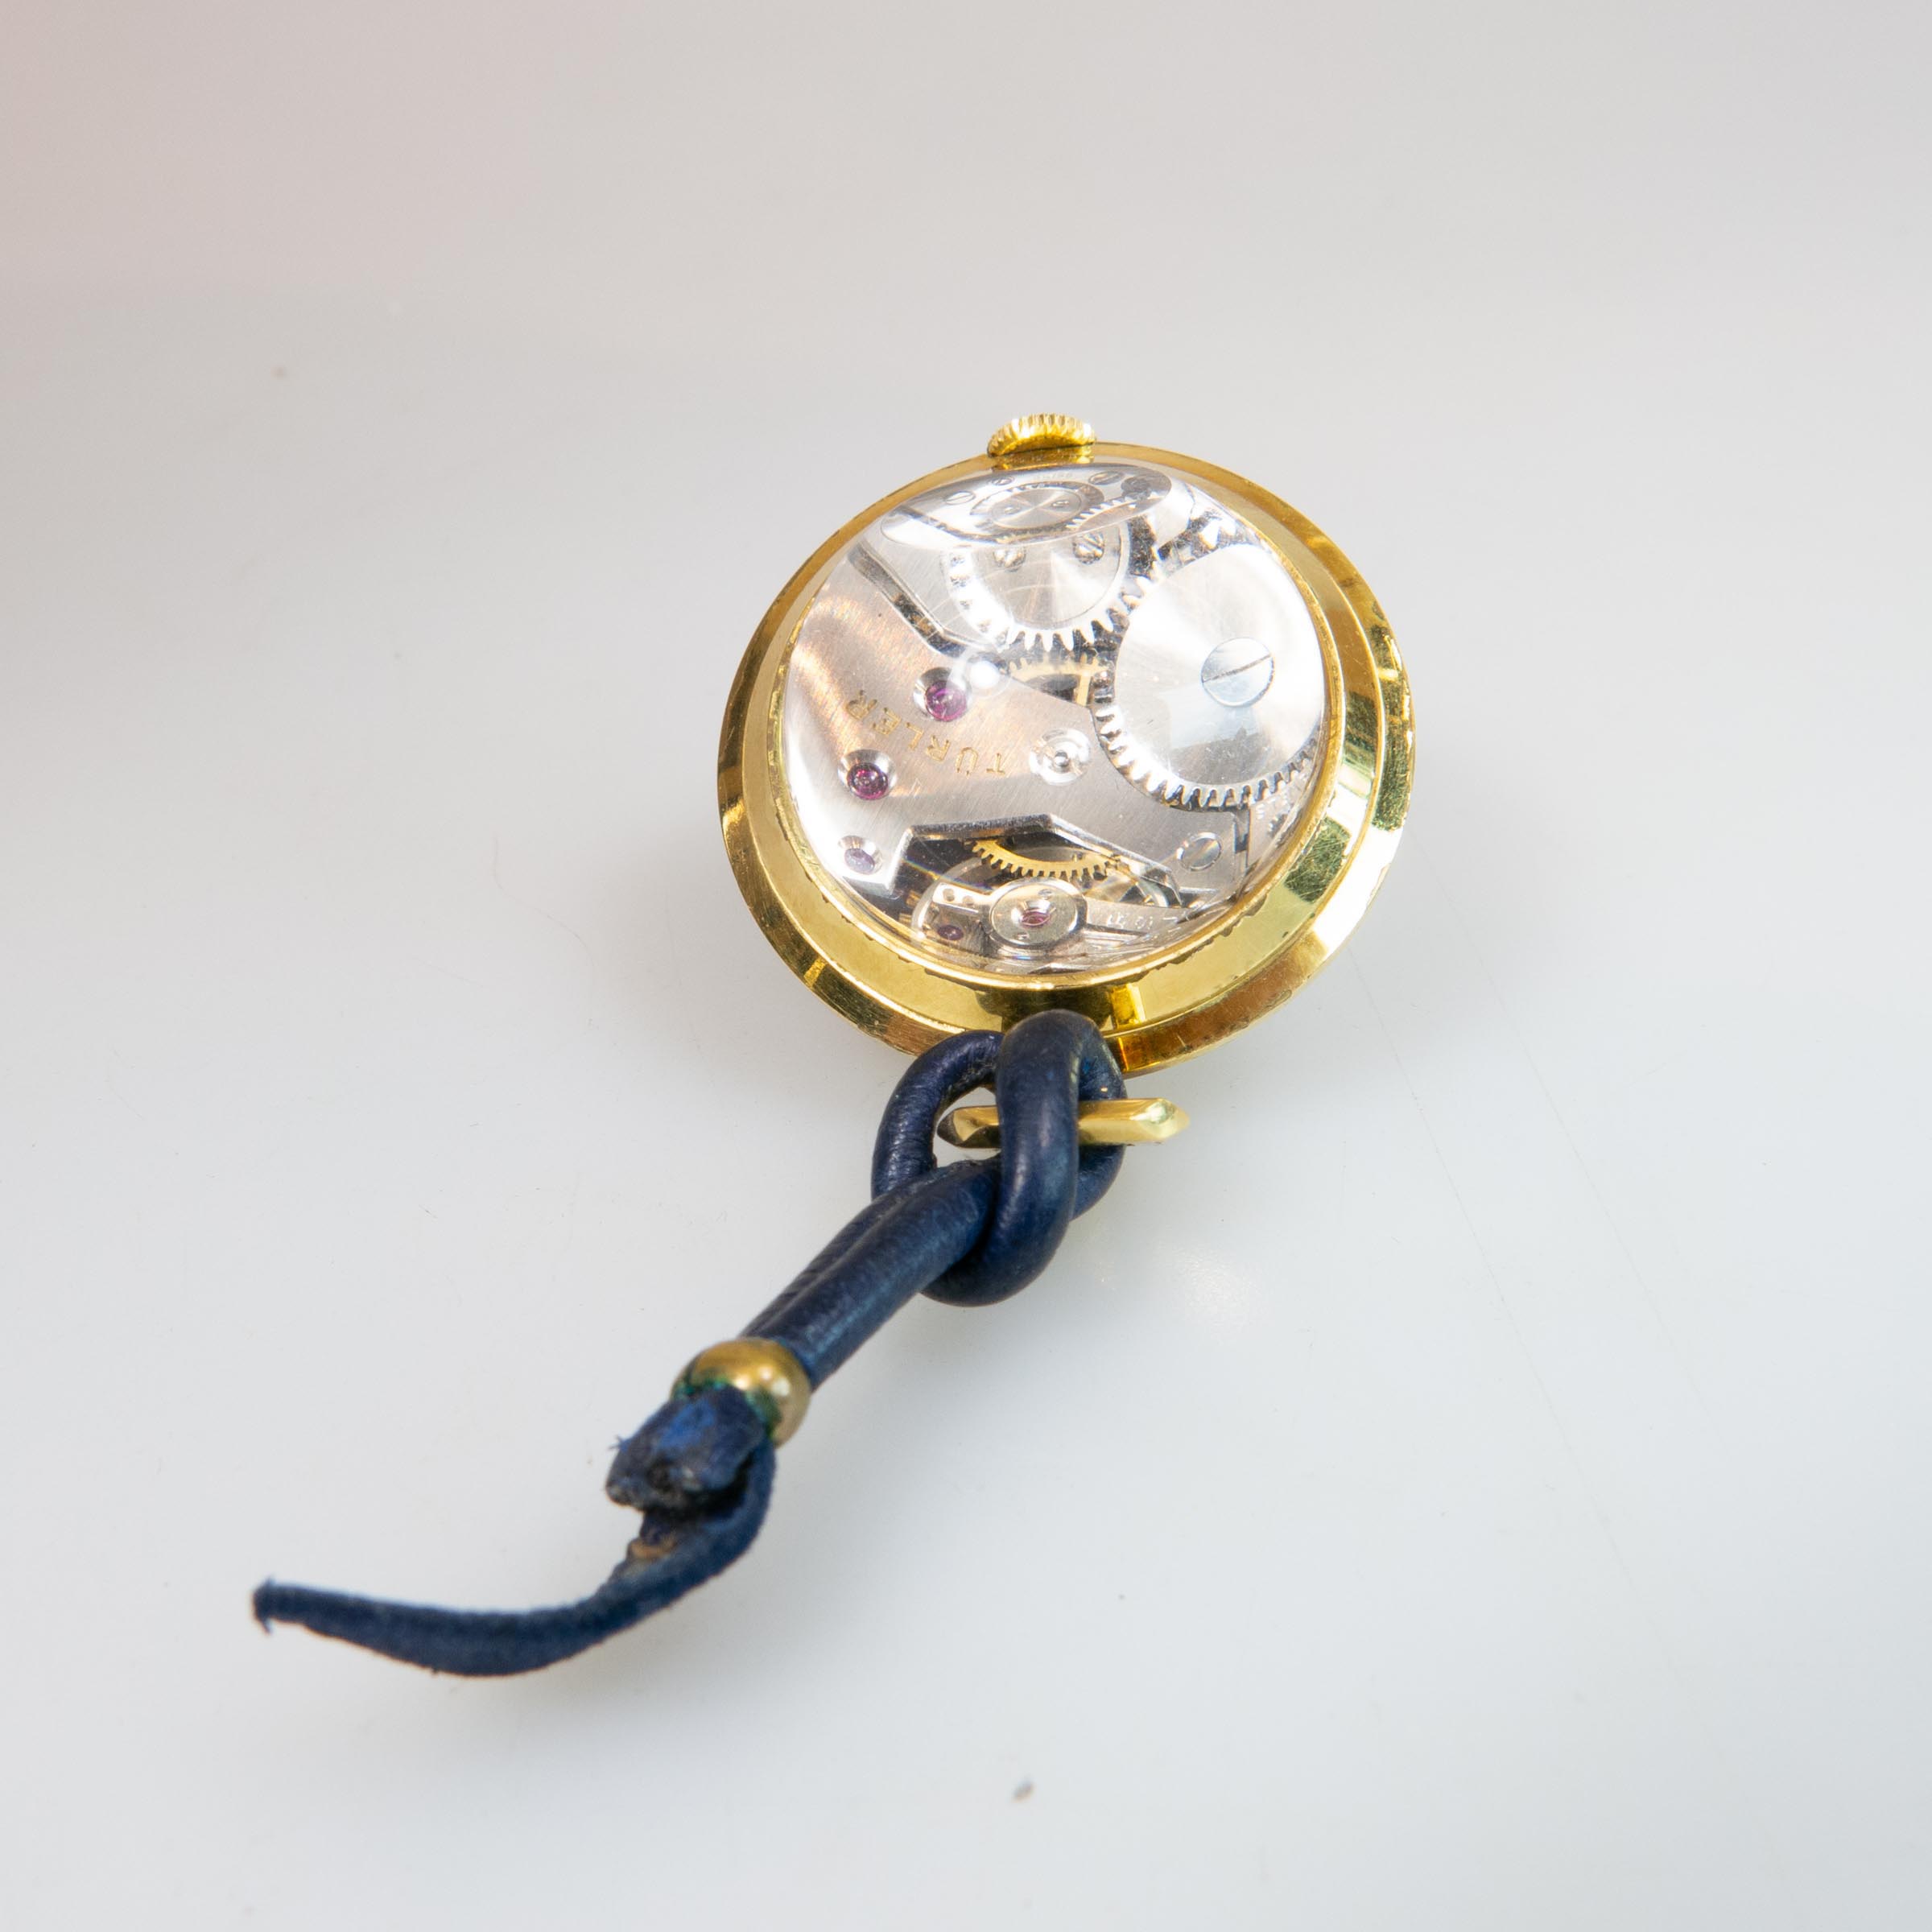 Türler Ball Watch/Desk Clock